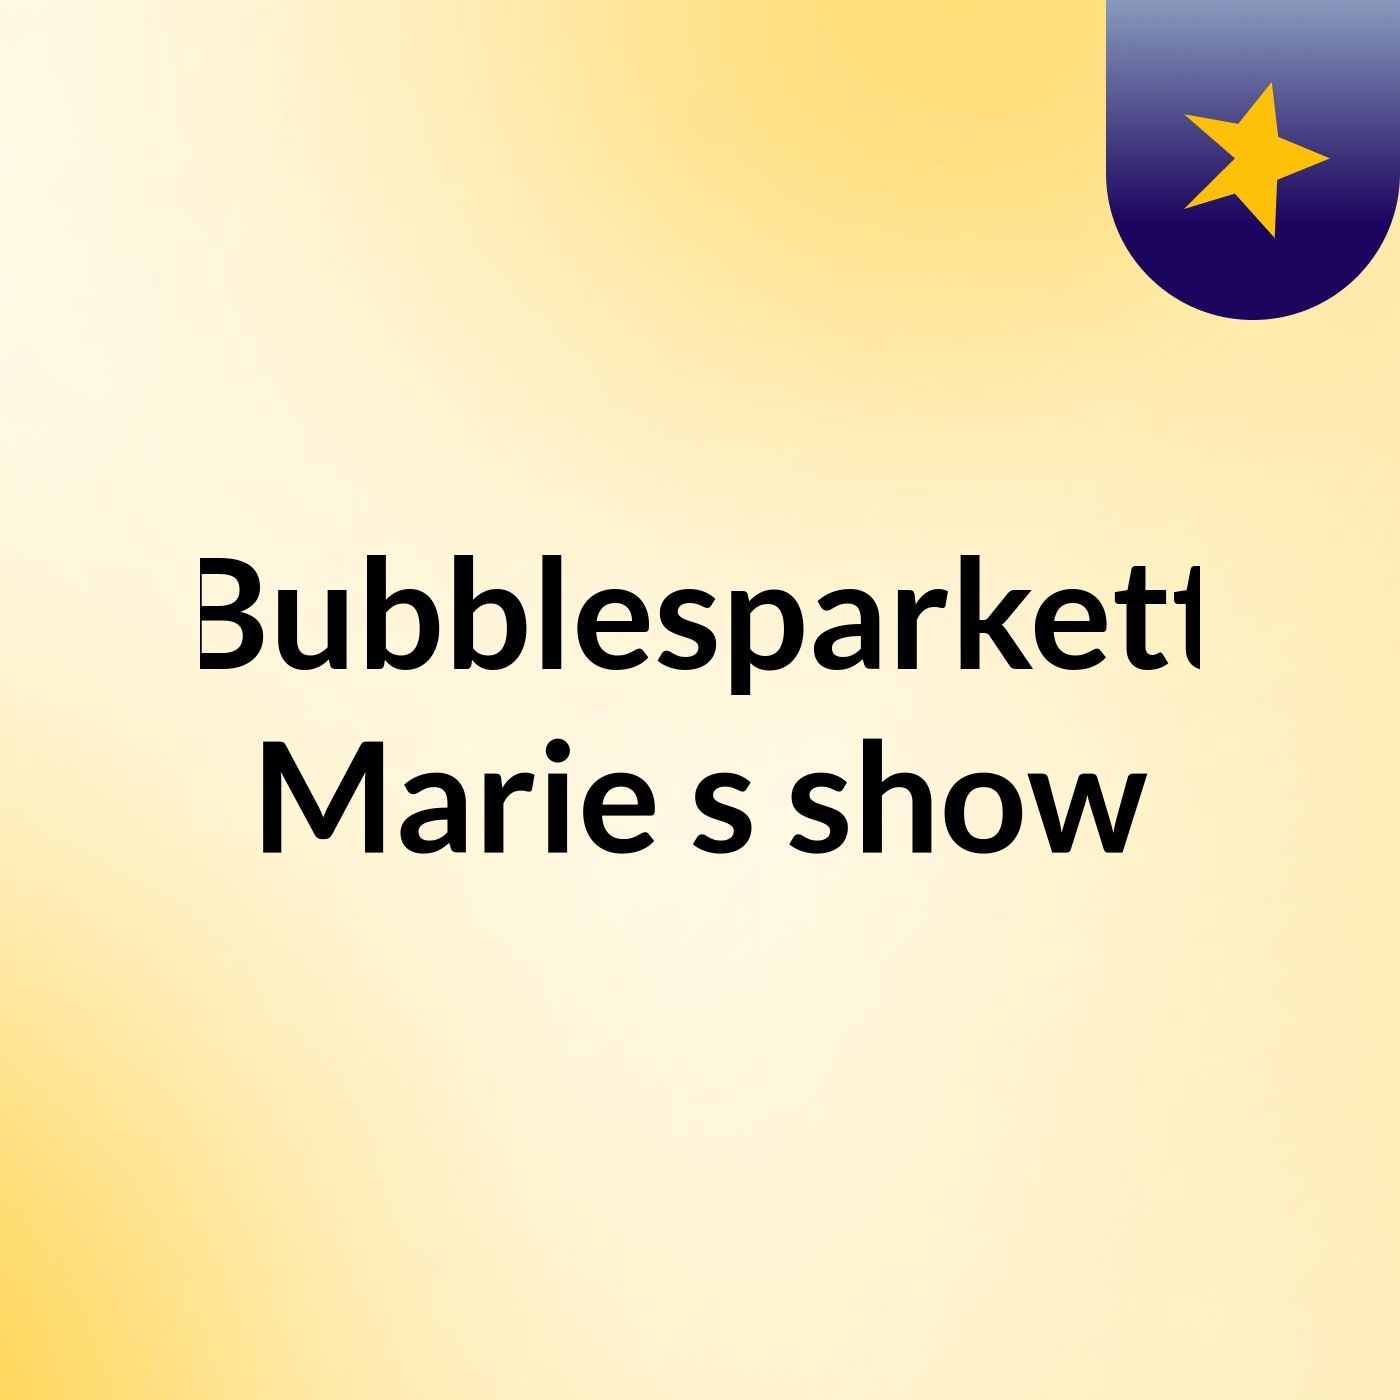 Bubblesparkett Marie's show